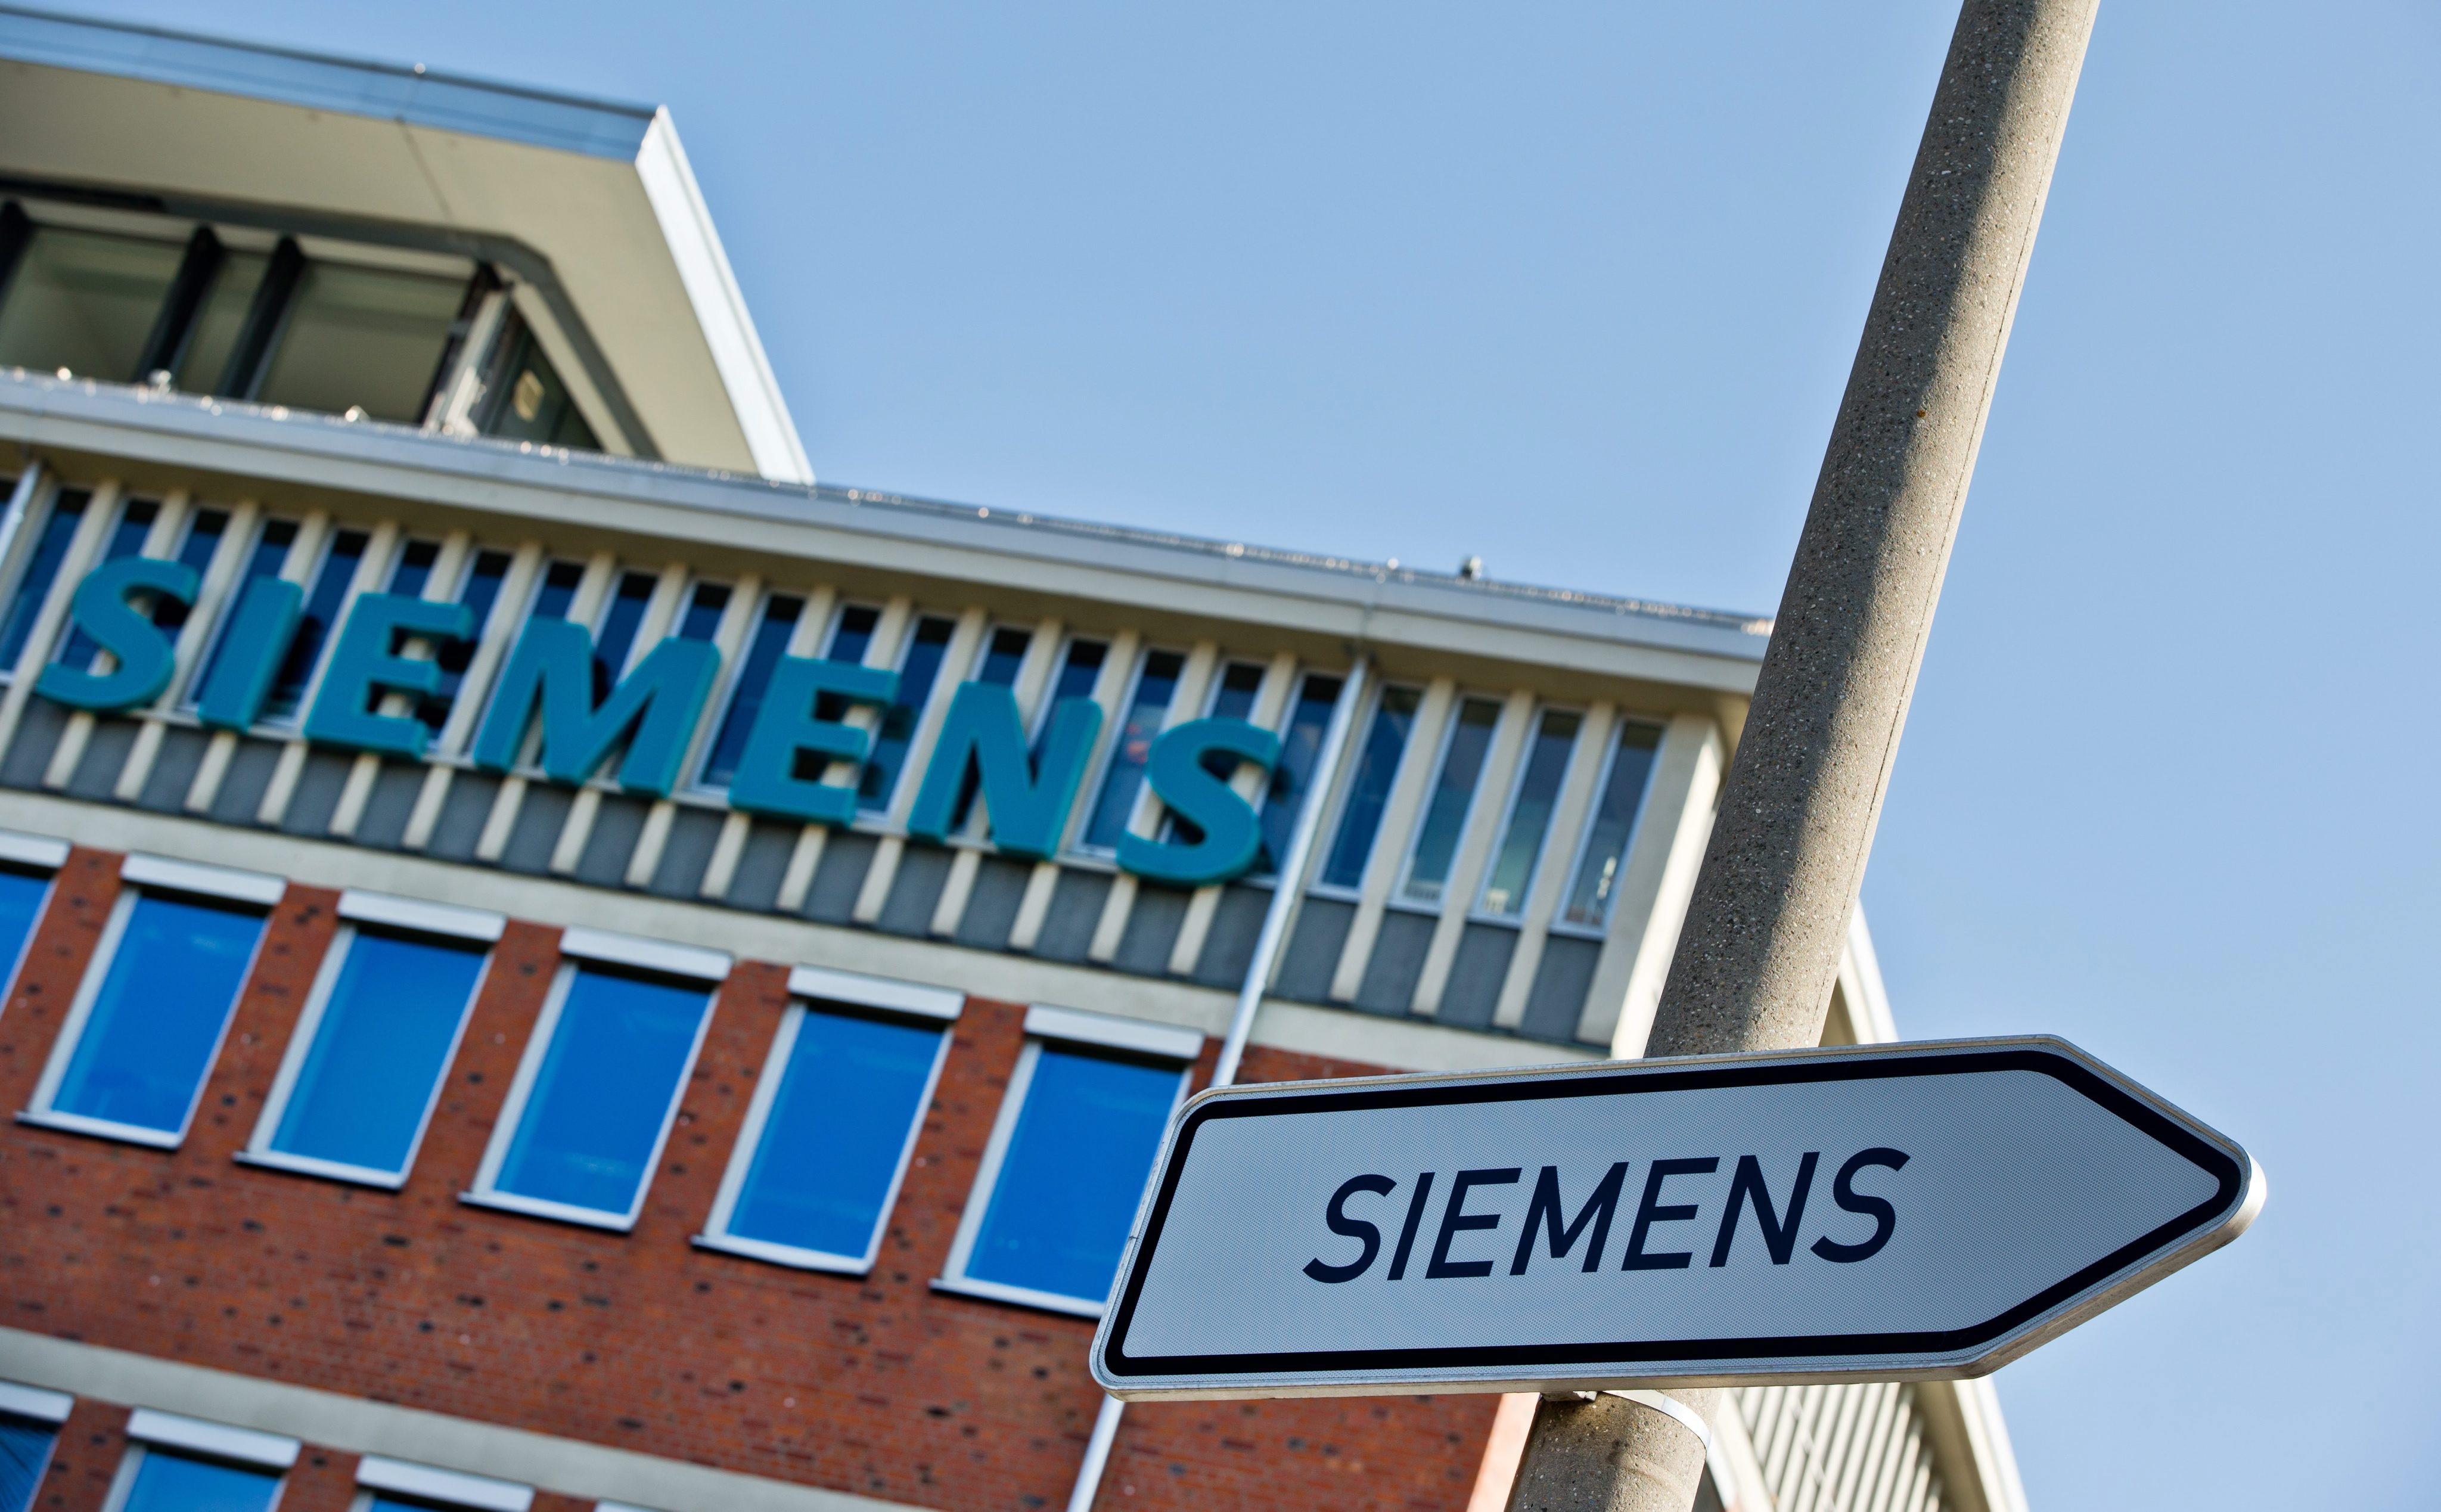 Het Duitse technologieconcern Siemens heeft in het derde kwartaal van het gebroken boekjaar een nettowinst geboekt van 1,4 miljard euro. Ten opzichte van dezelfde periode vorig jaar komt dat neer op een stijging met 27 procent. Daarmee presteerde het bedrijf beter dan analisten hadden verwacht. De winststijging kwam tot stand bij een lagere omzet. Die kwam uit op 17,9 miljard euro, 4 procent minder dan een jaar geleden. Gecorrigeerd voor met name wisselkoerseffecten was sprake van een omzetstijging met 1 procent. Siemens boekte naar eigen zeggen goede resultaten in de meeste sectoren waarin het actief is. De sector energie bleef daarbij achter en had een drukkend effect op de winst. Het Duitse concern maakt onder meer windmolens.